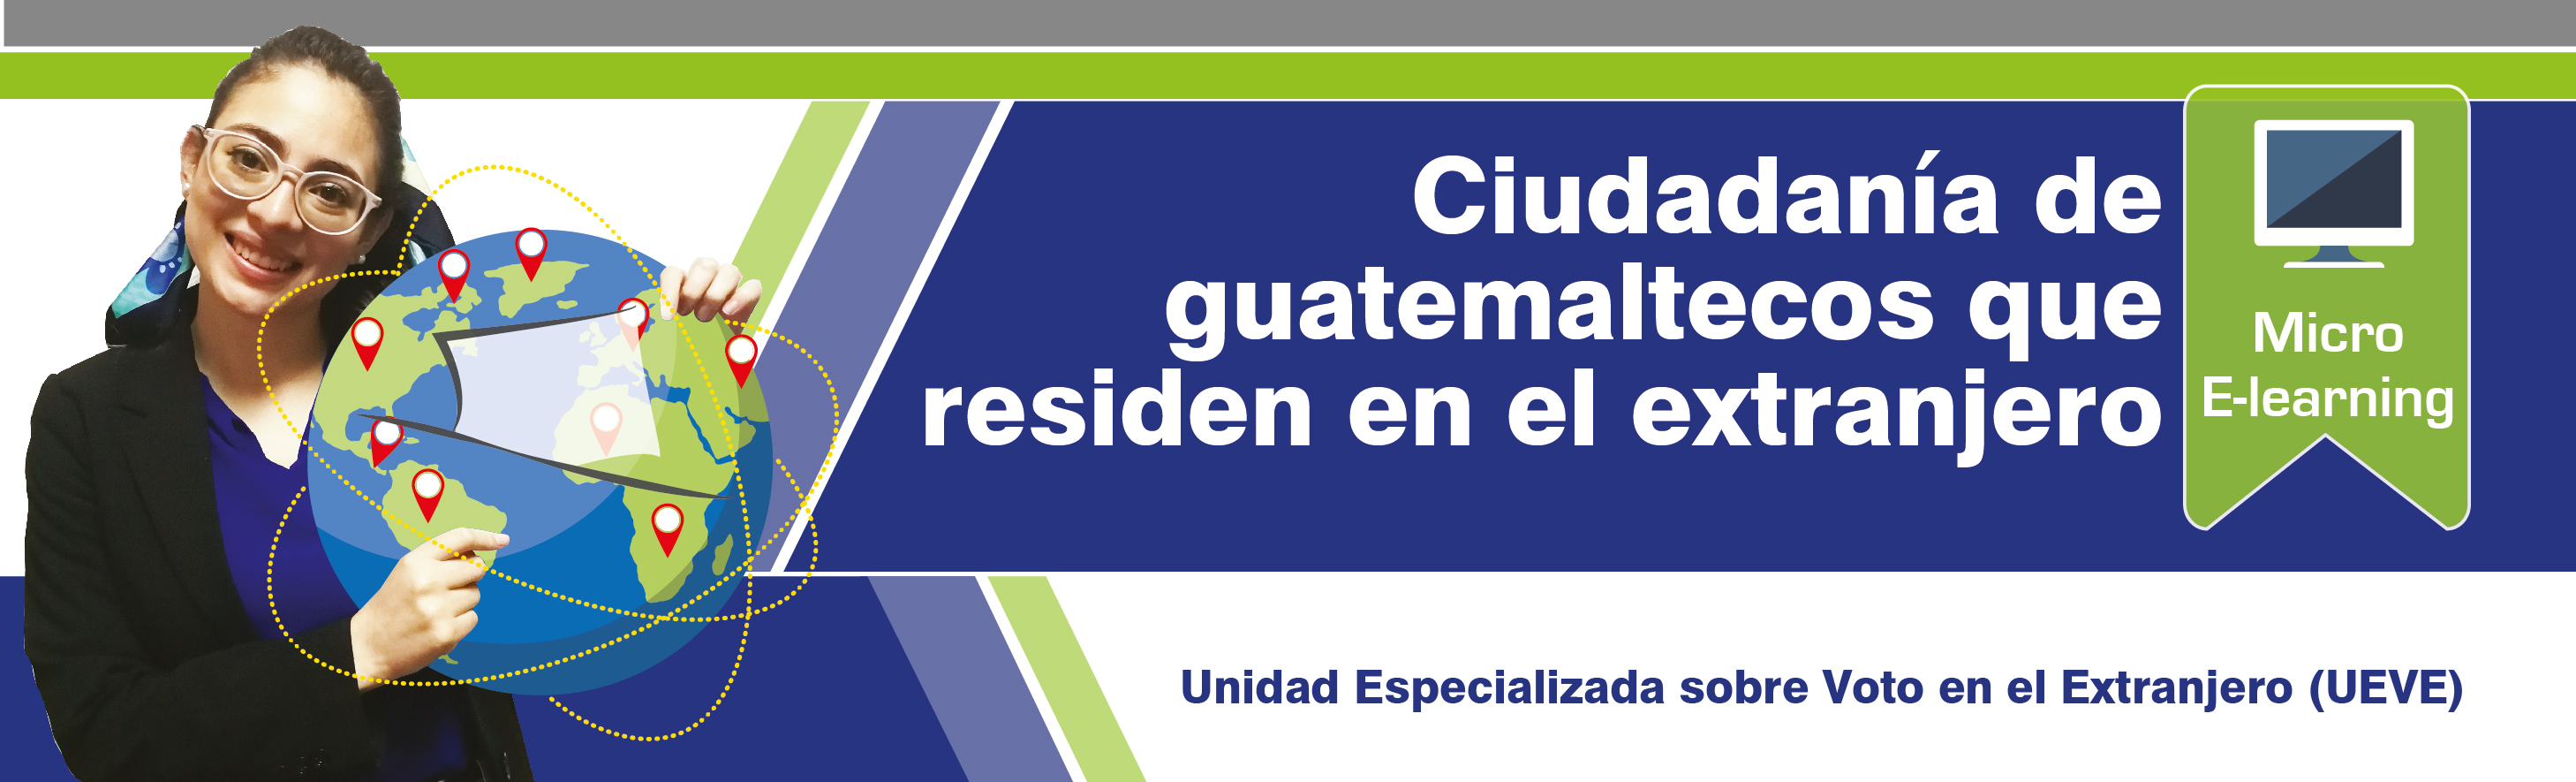 Ciudadanía de guatemaltecos que residen en el extranjero H